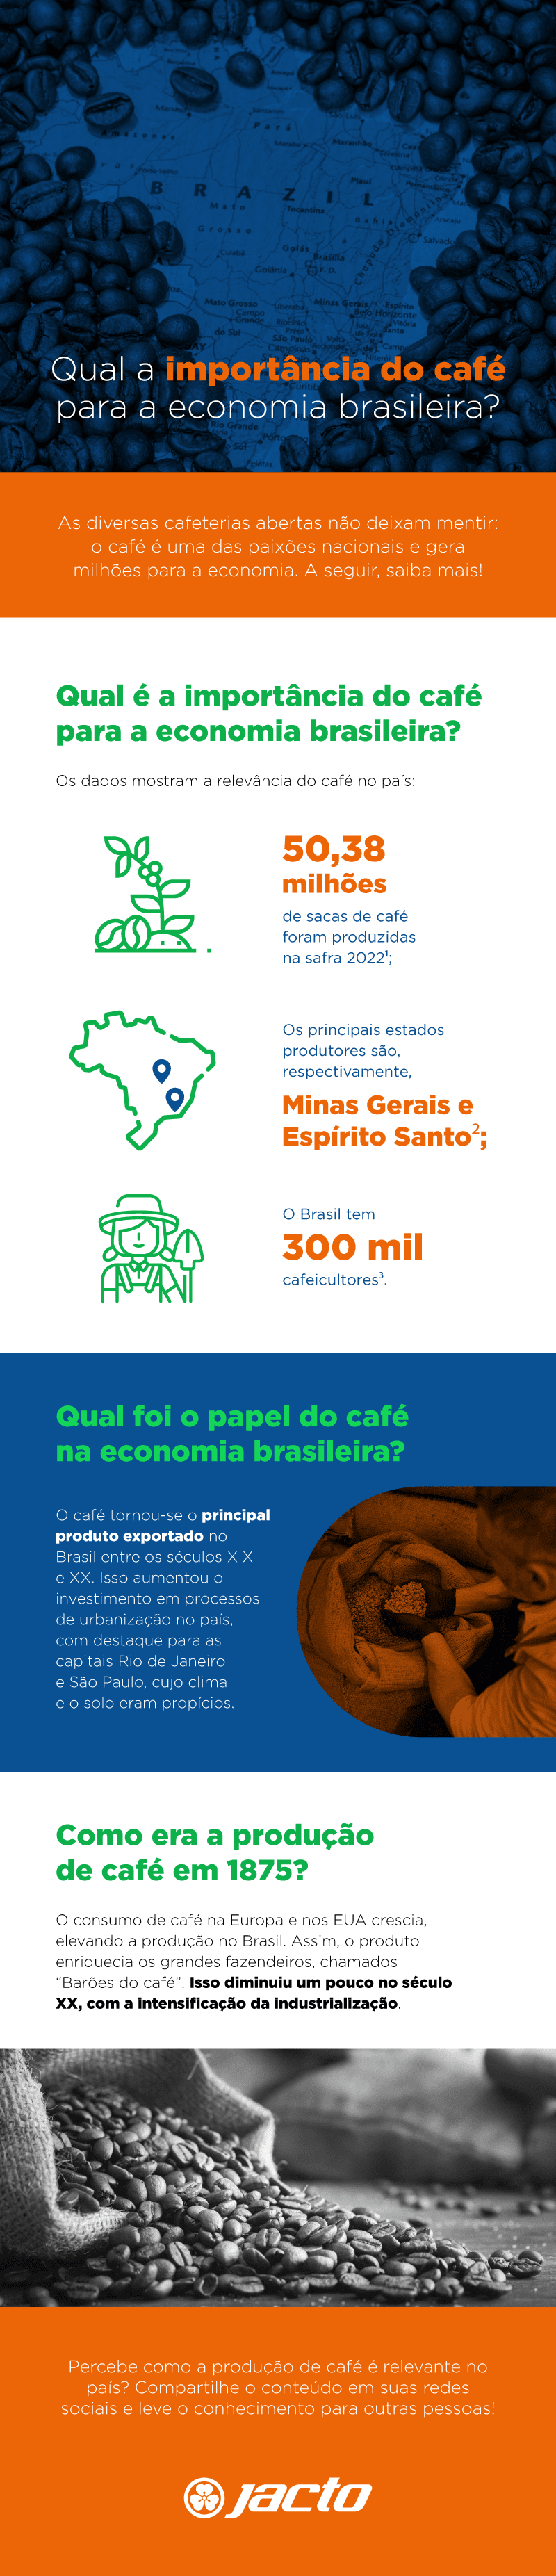 Qual a importância do café para a economia brasileira?